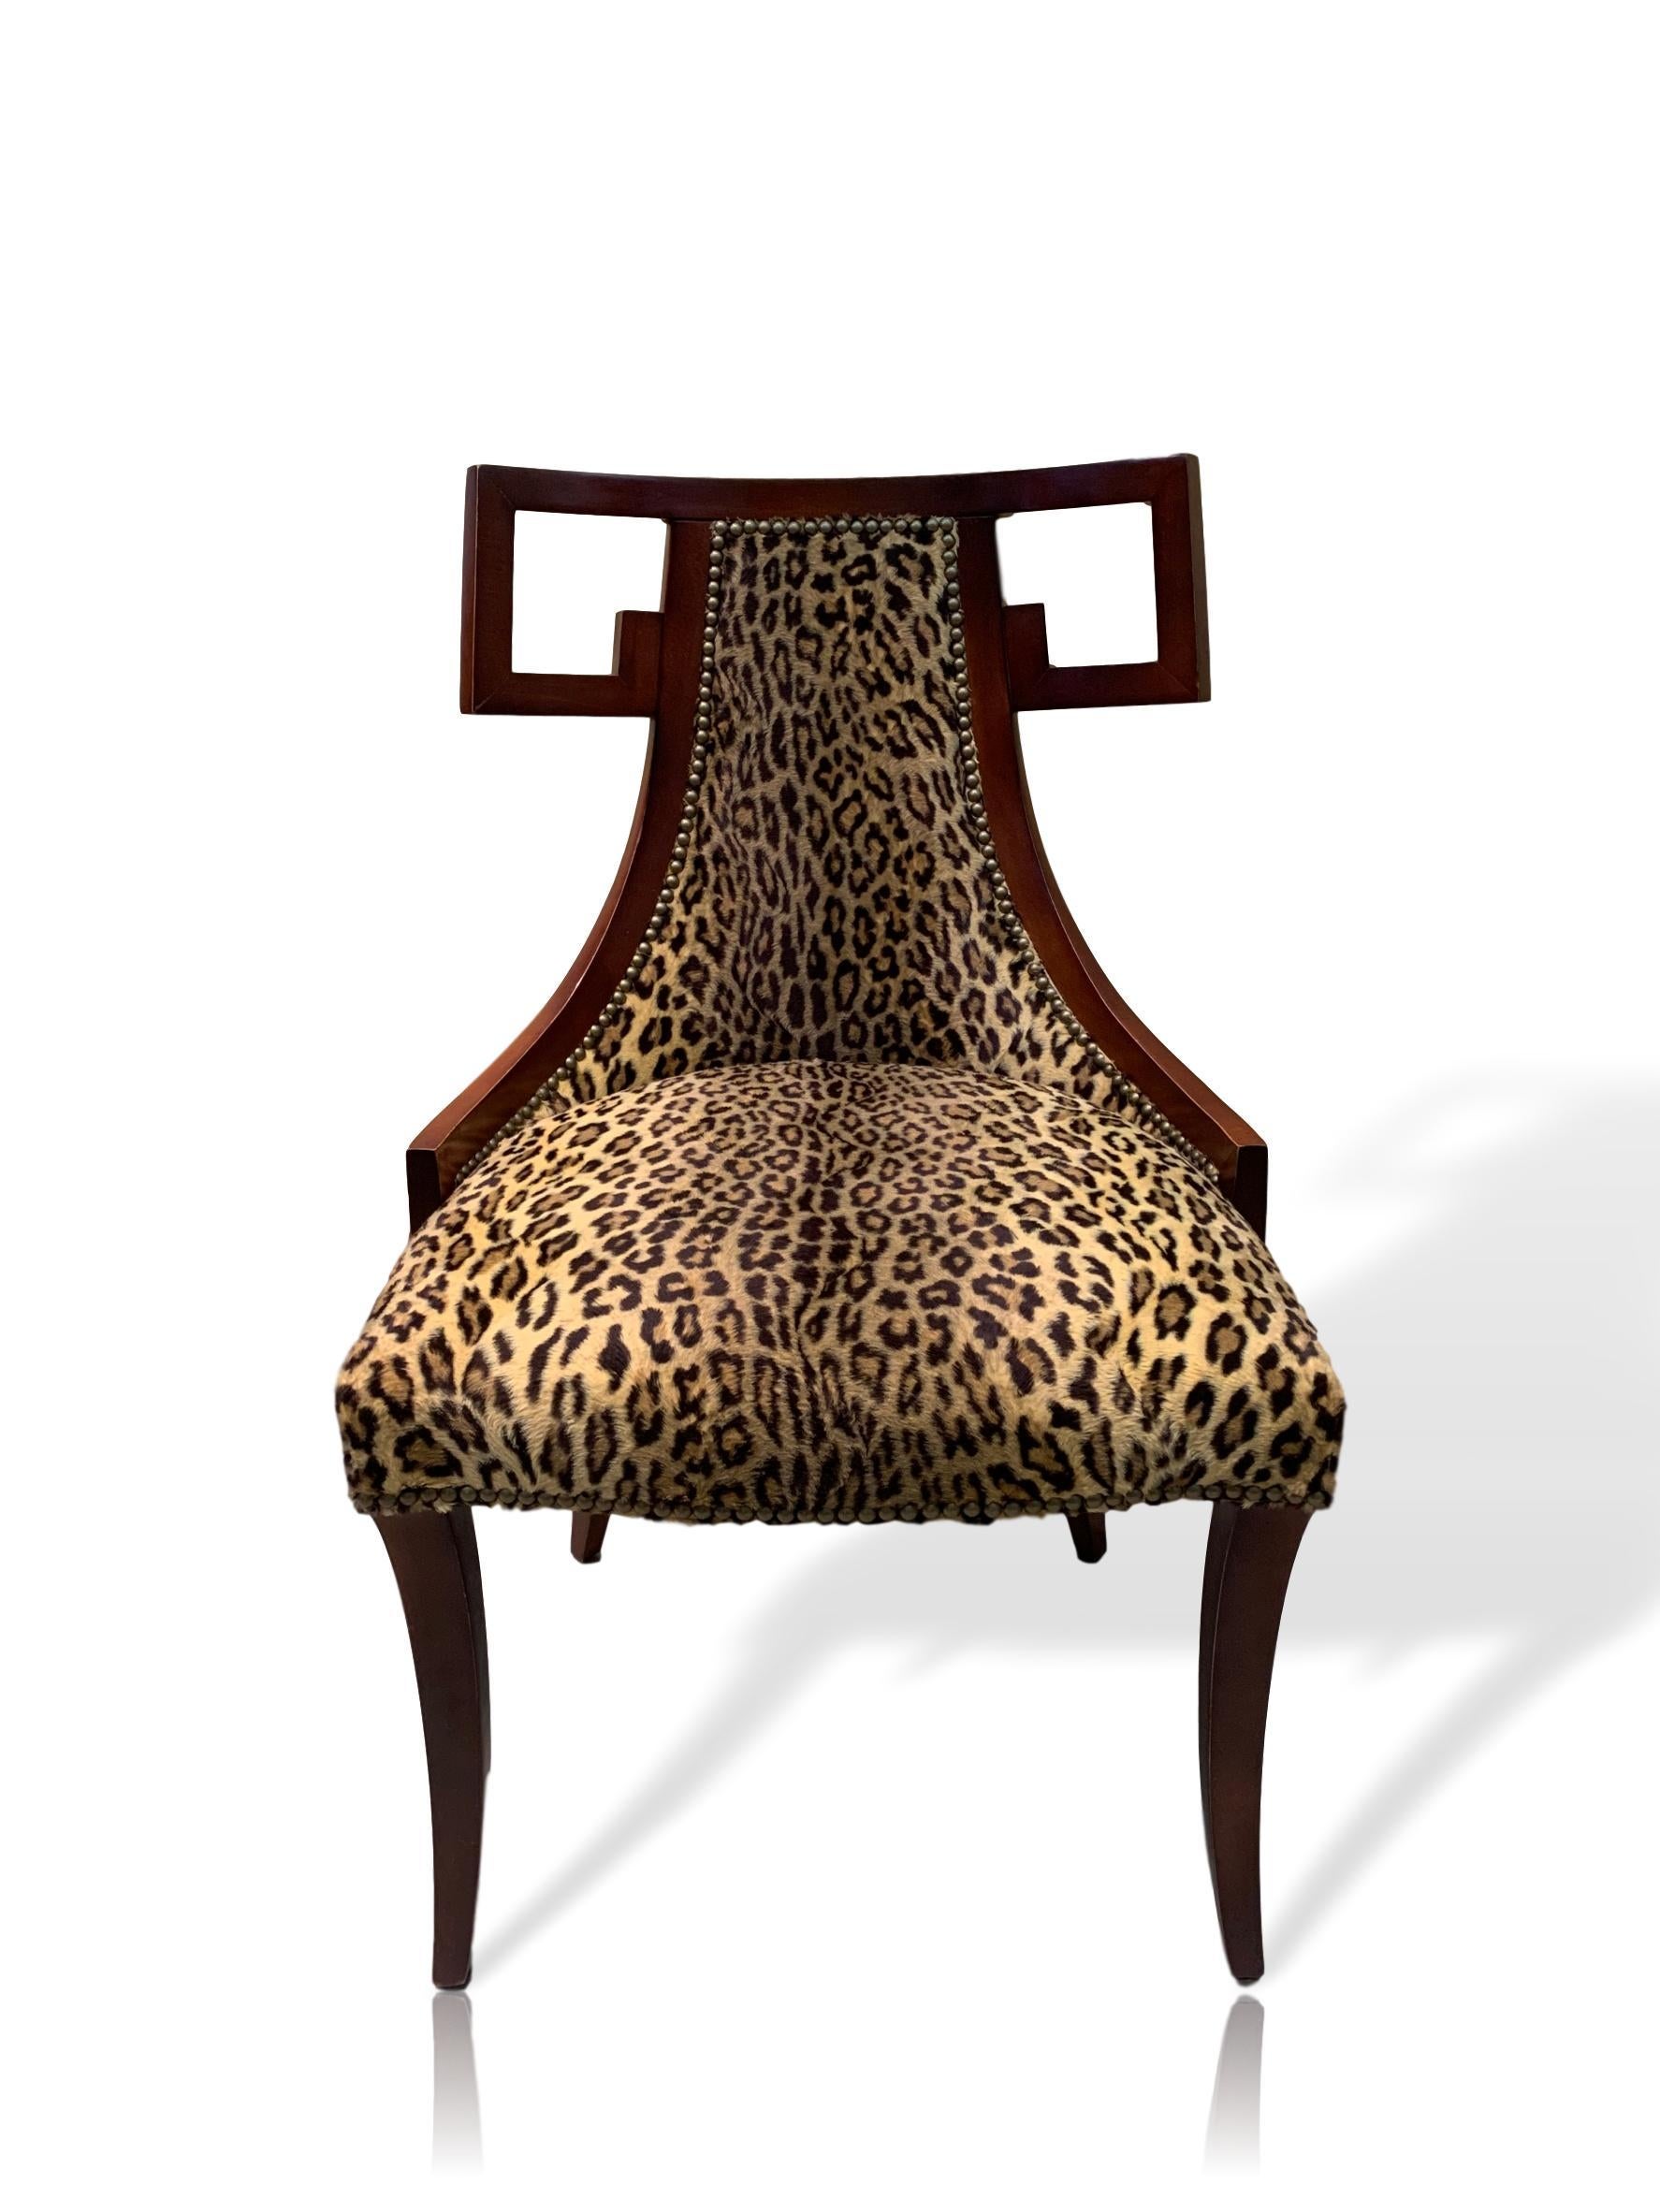 Ein Paar Baker Greek Key Stühle, neu gepolstert mit Ralph Lauren Leopardenstoff, Baker Modellnummer 7849, entworfen von Thomas Peasant für Baker Furniture, dem renommiertesten und hochwertigsten Möbelhersteller der Nation. Sehr schwerer, massiver